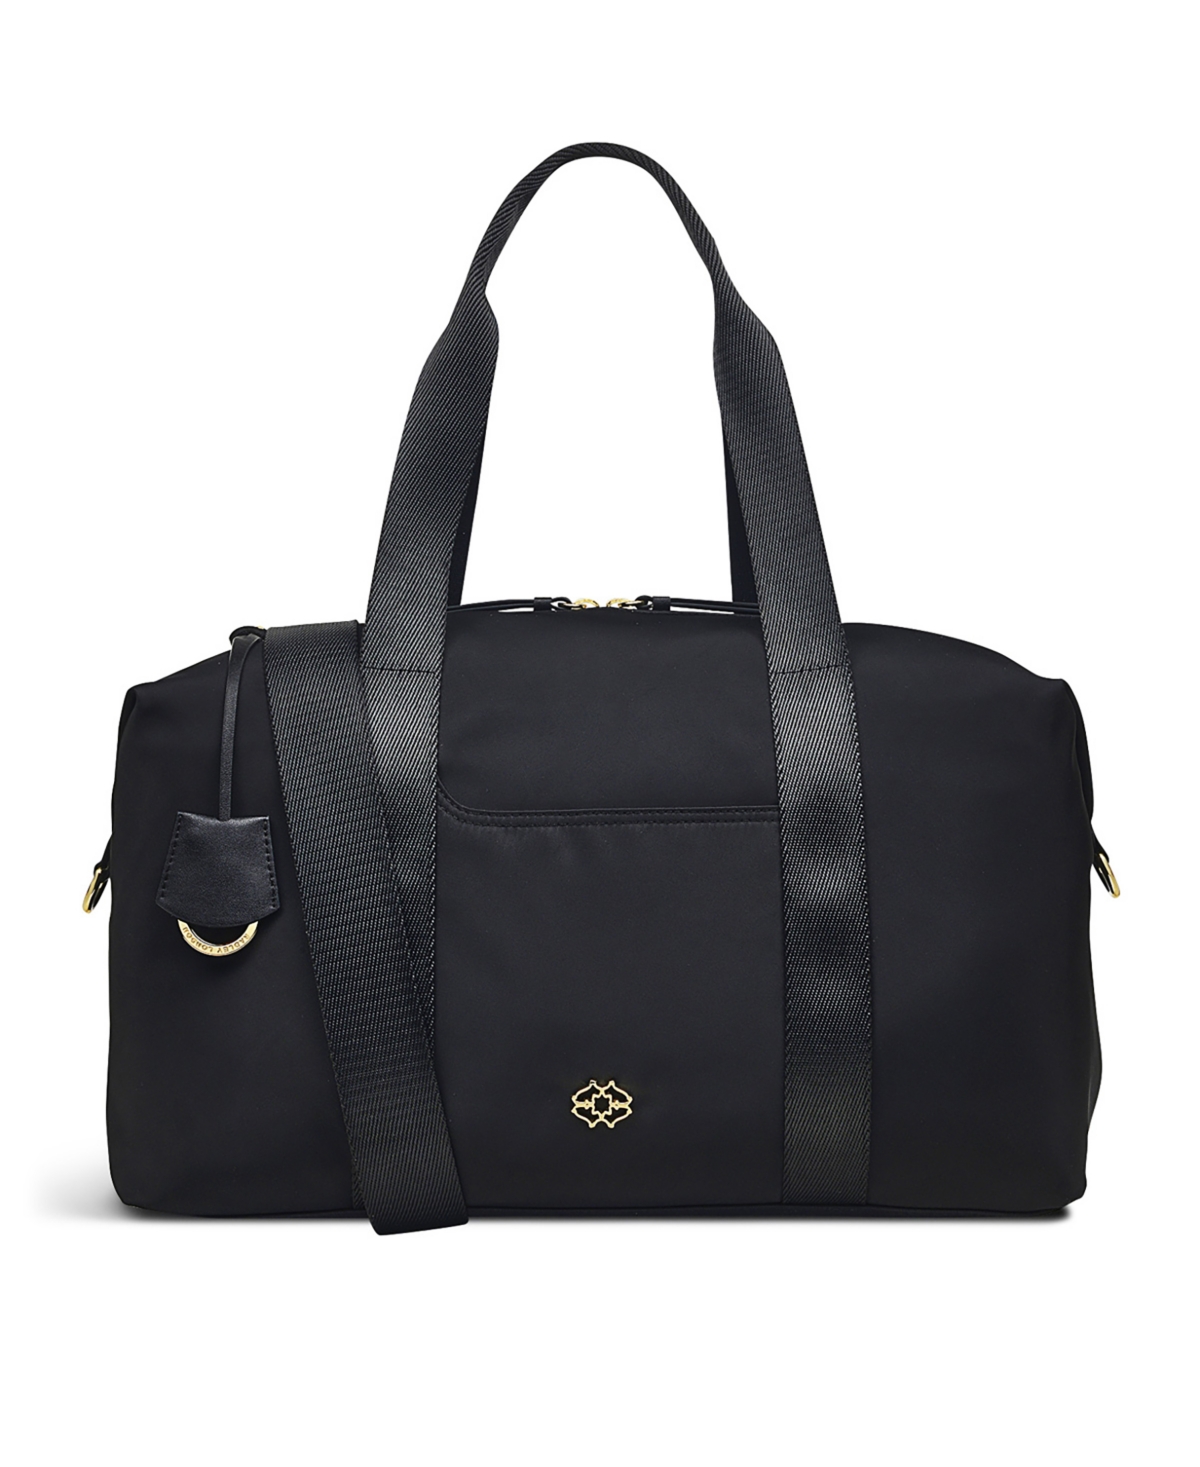 Radley London Women's Radley 24/7 Zip Top Travel Bag In Black